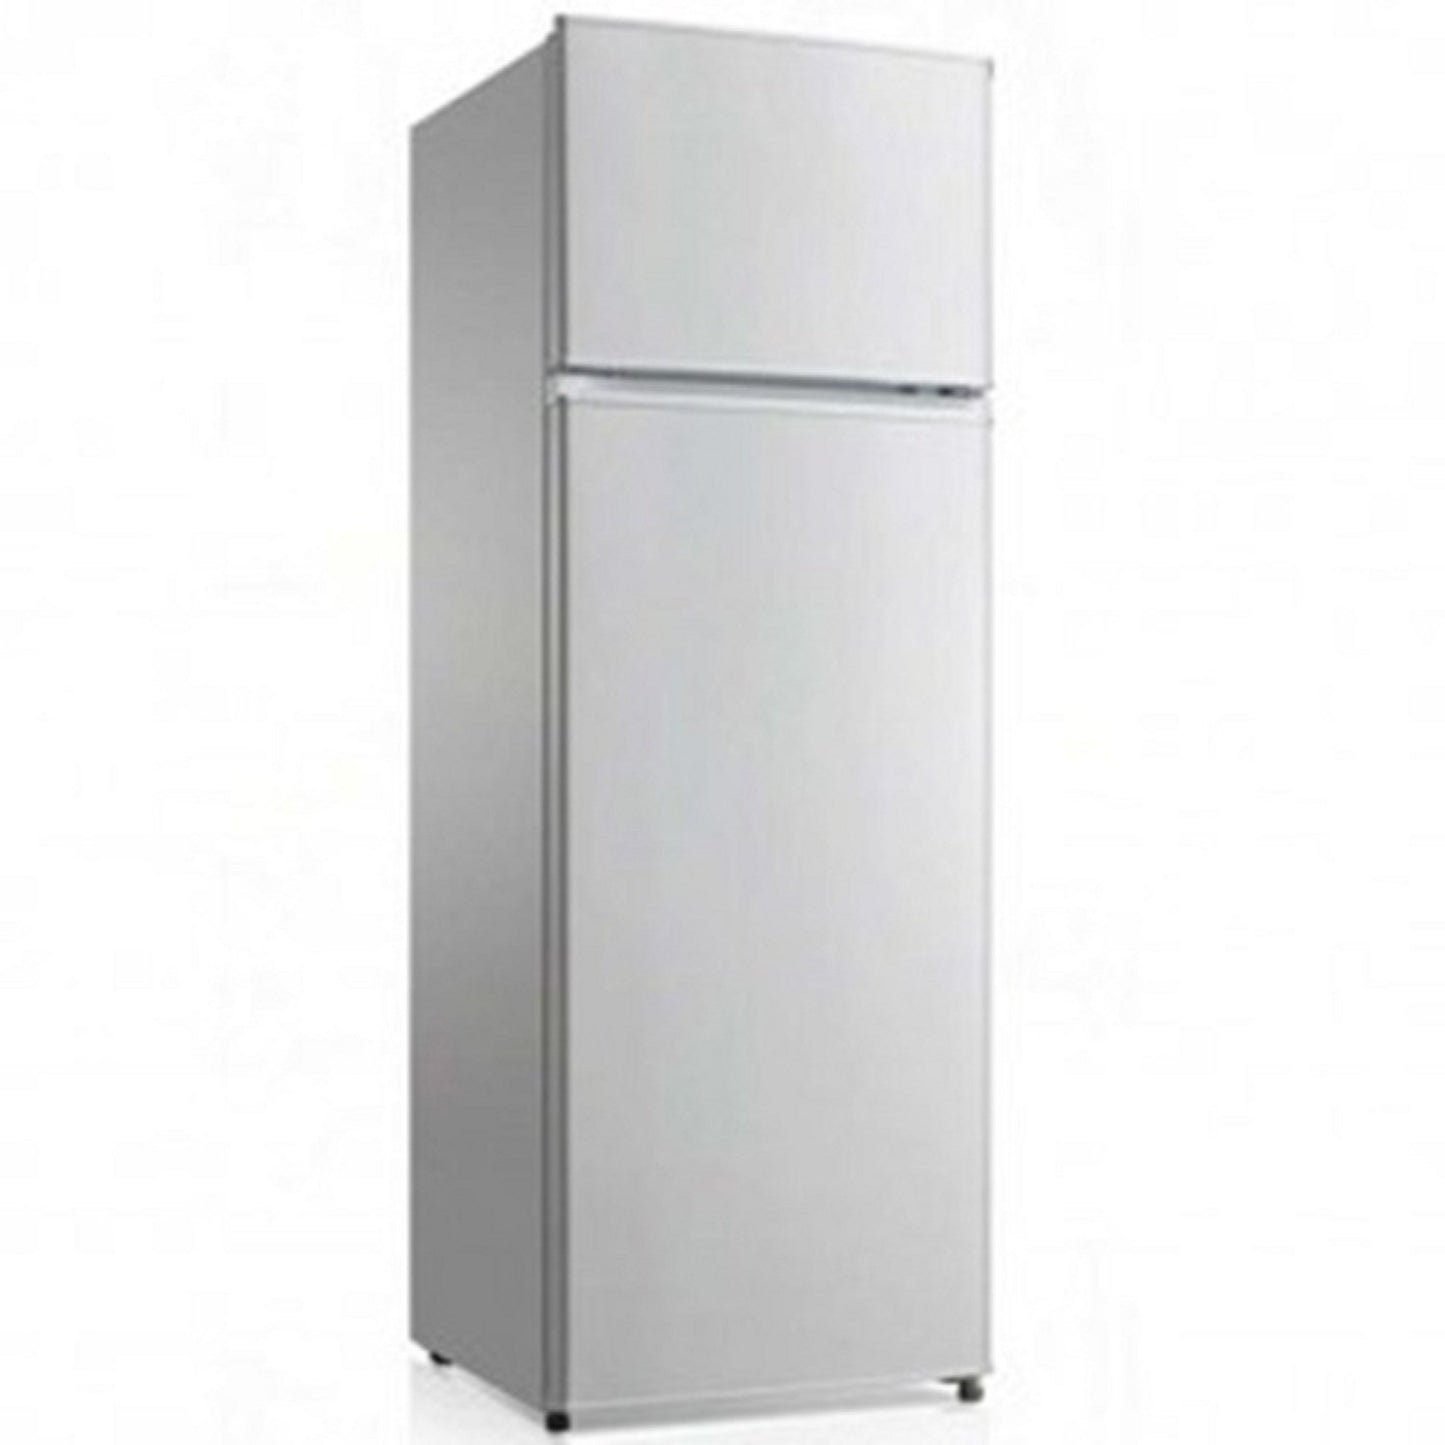 Midea HD 273F 207 litres Top Freezer Refrigerator